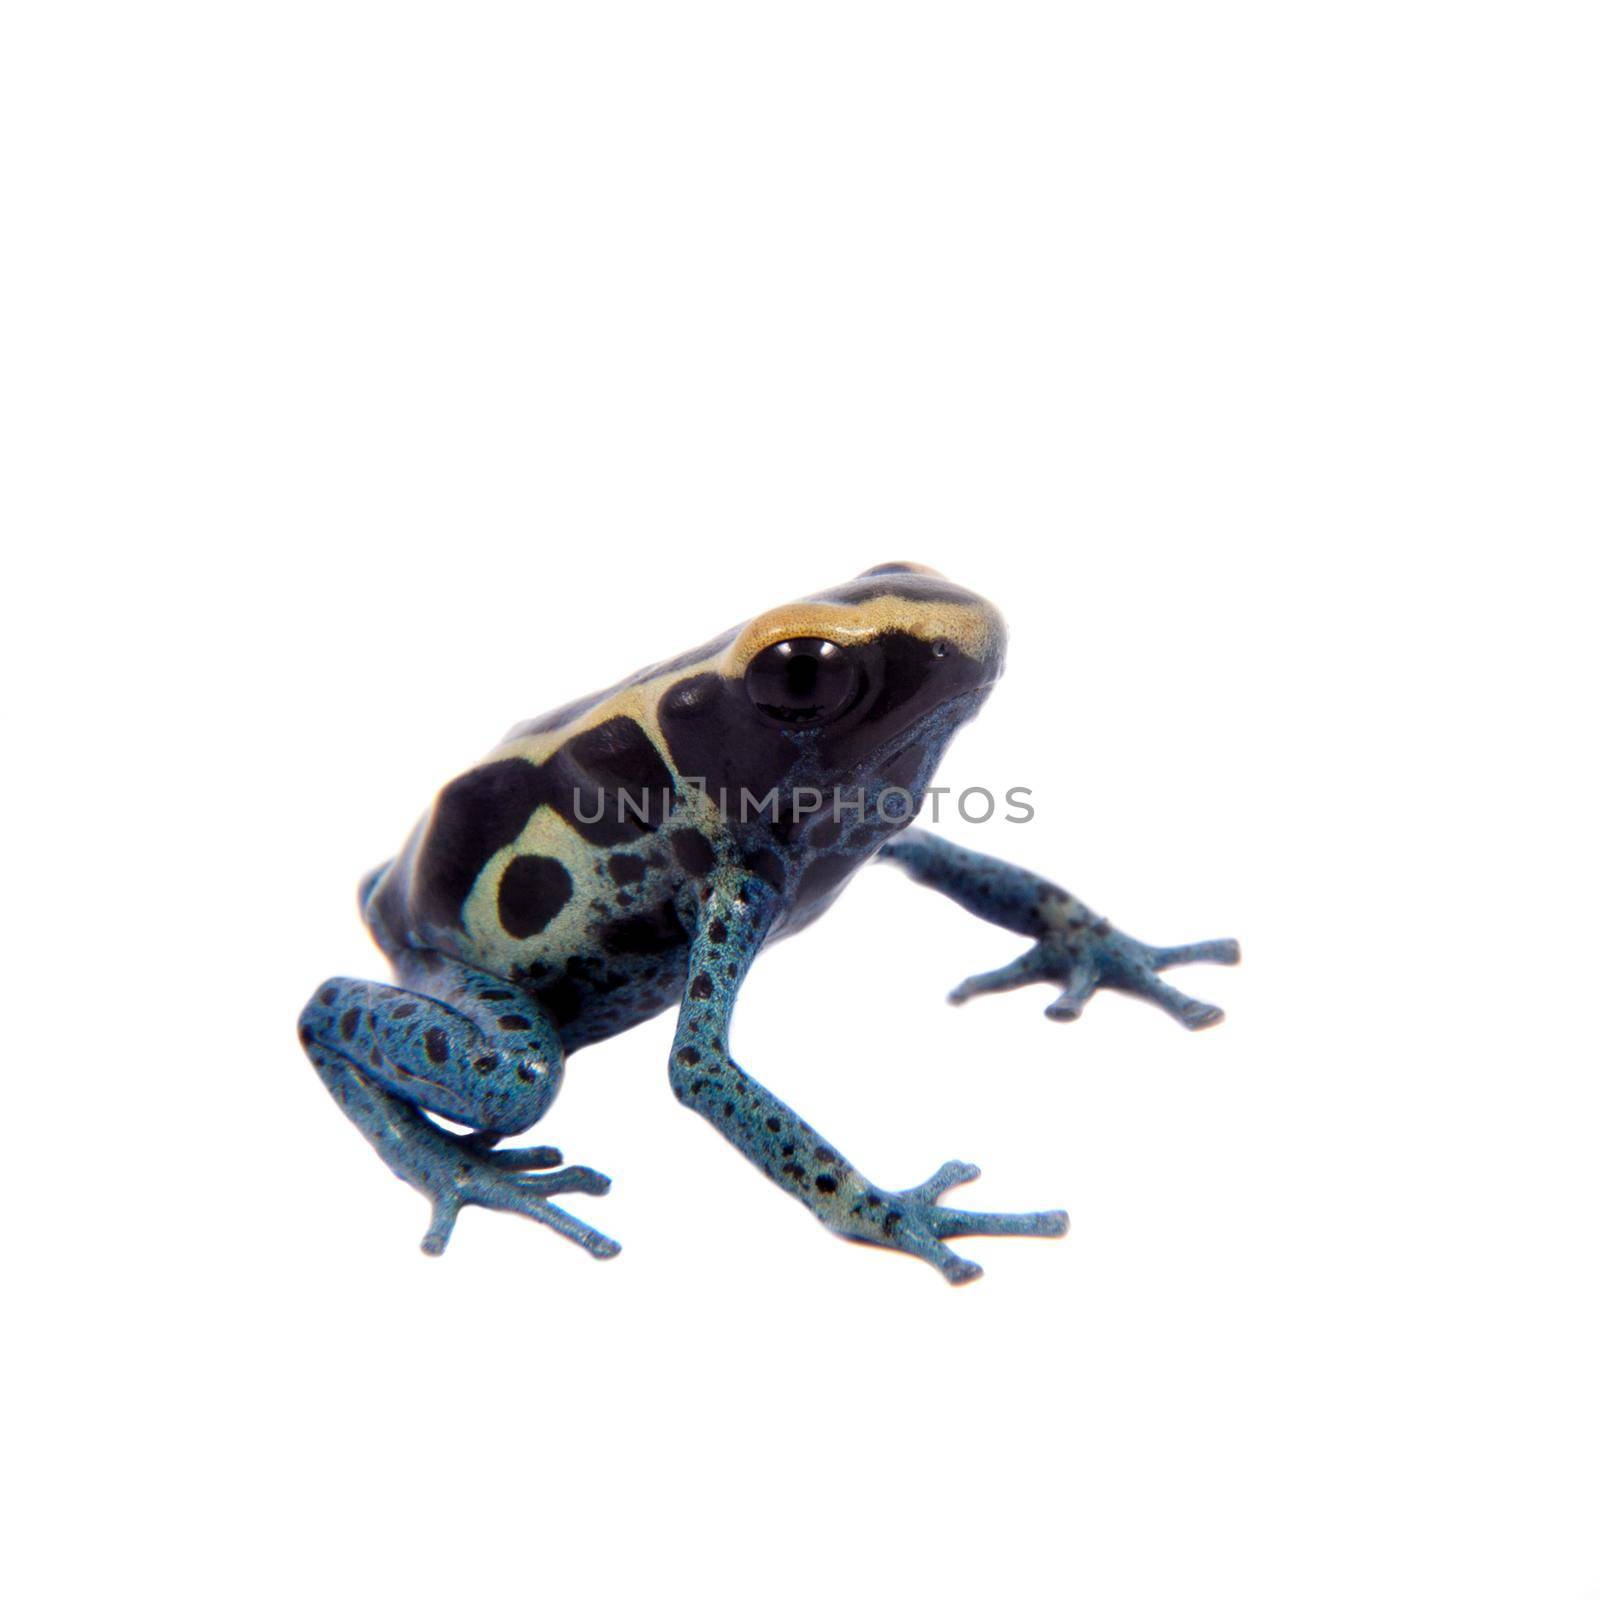 Awarape Blue Dyeing Poison Dart Frogling, Dendrobates tinctorius, on white background.